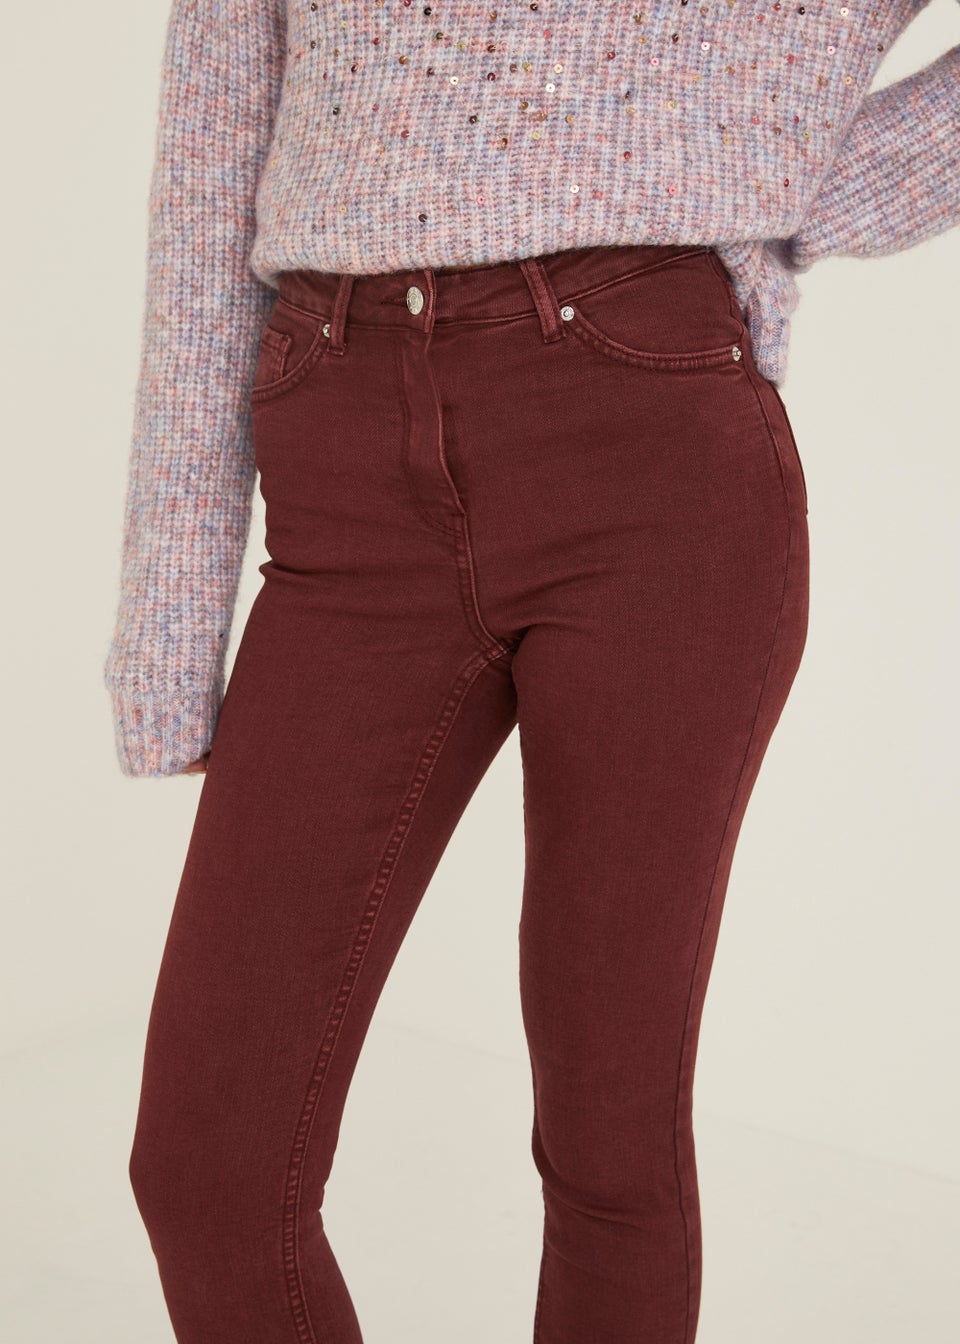 April Burgundy Super Skinny Jeans - Matalan